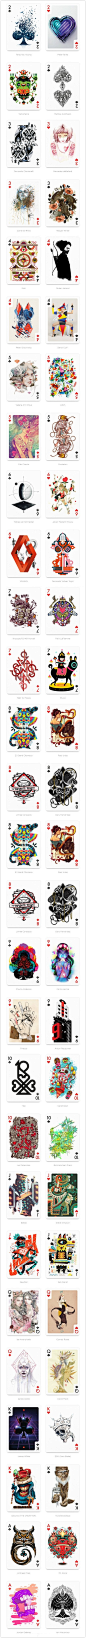 来自世界各地的54位艺术家，每个人采用自己的绘图风格绘制了一张扑克牌图案，组成一套完整的54张扑克牌，售价17美元一盒。（via第二自然）